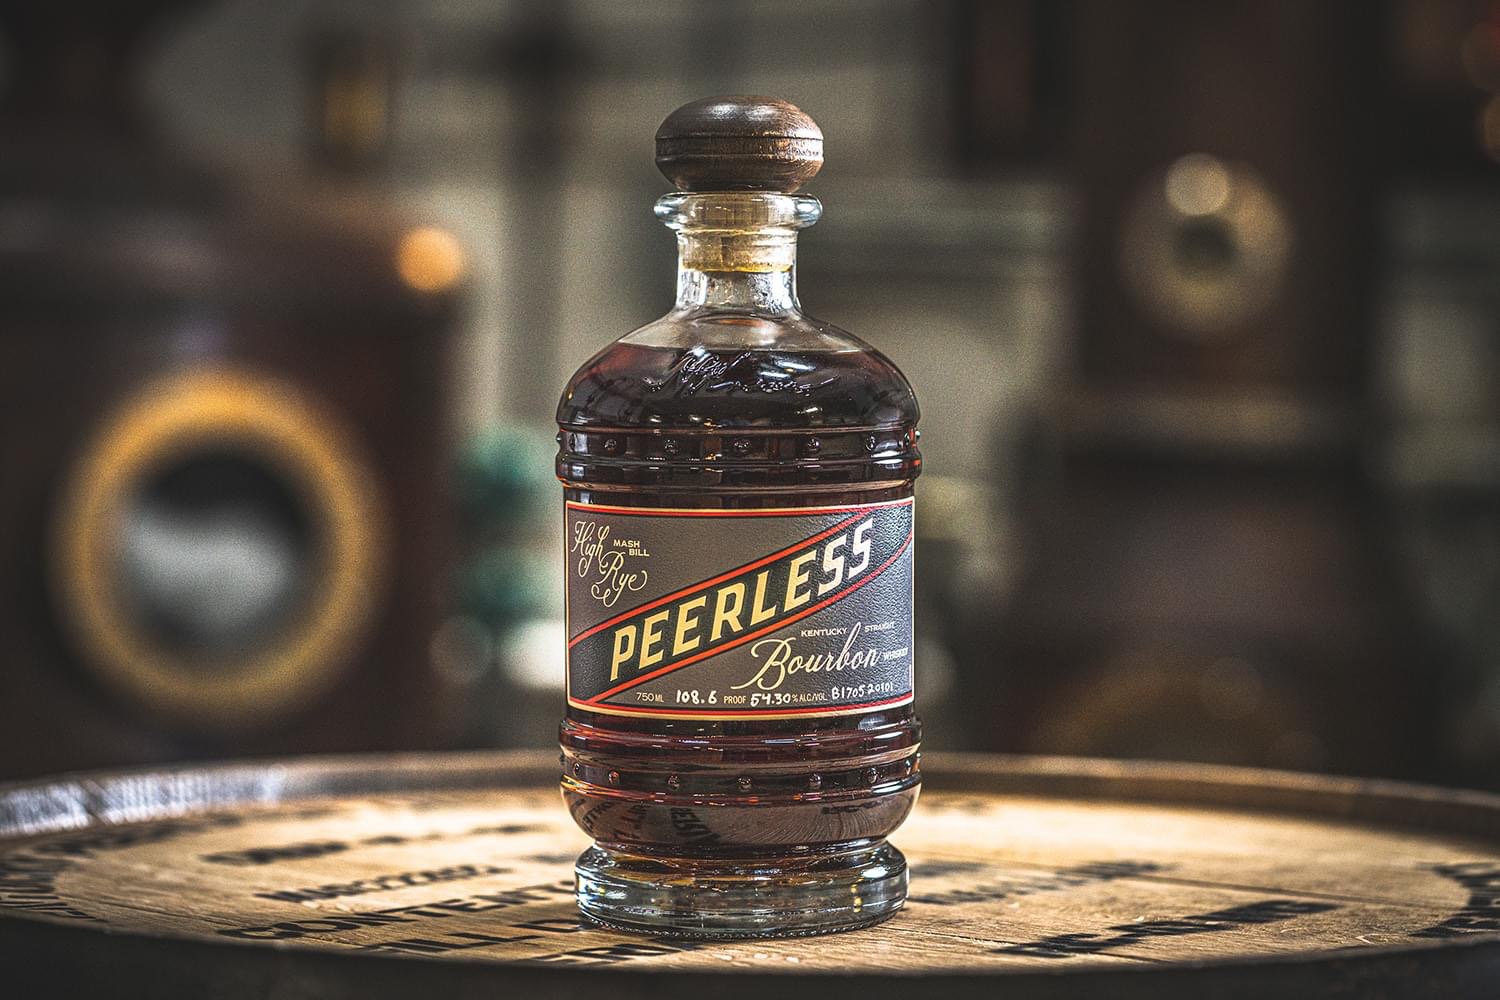 Kentucky Peerless Distilling Announces Its New High Rye Bourbon